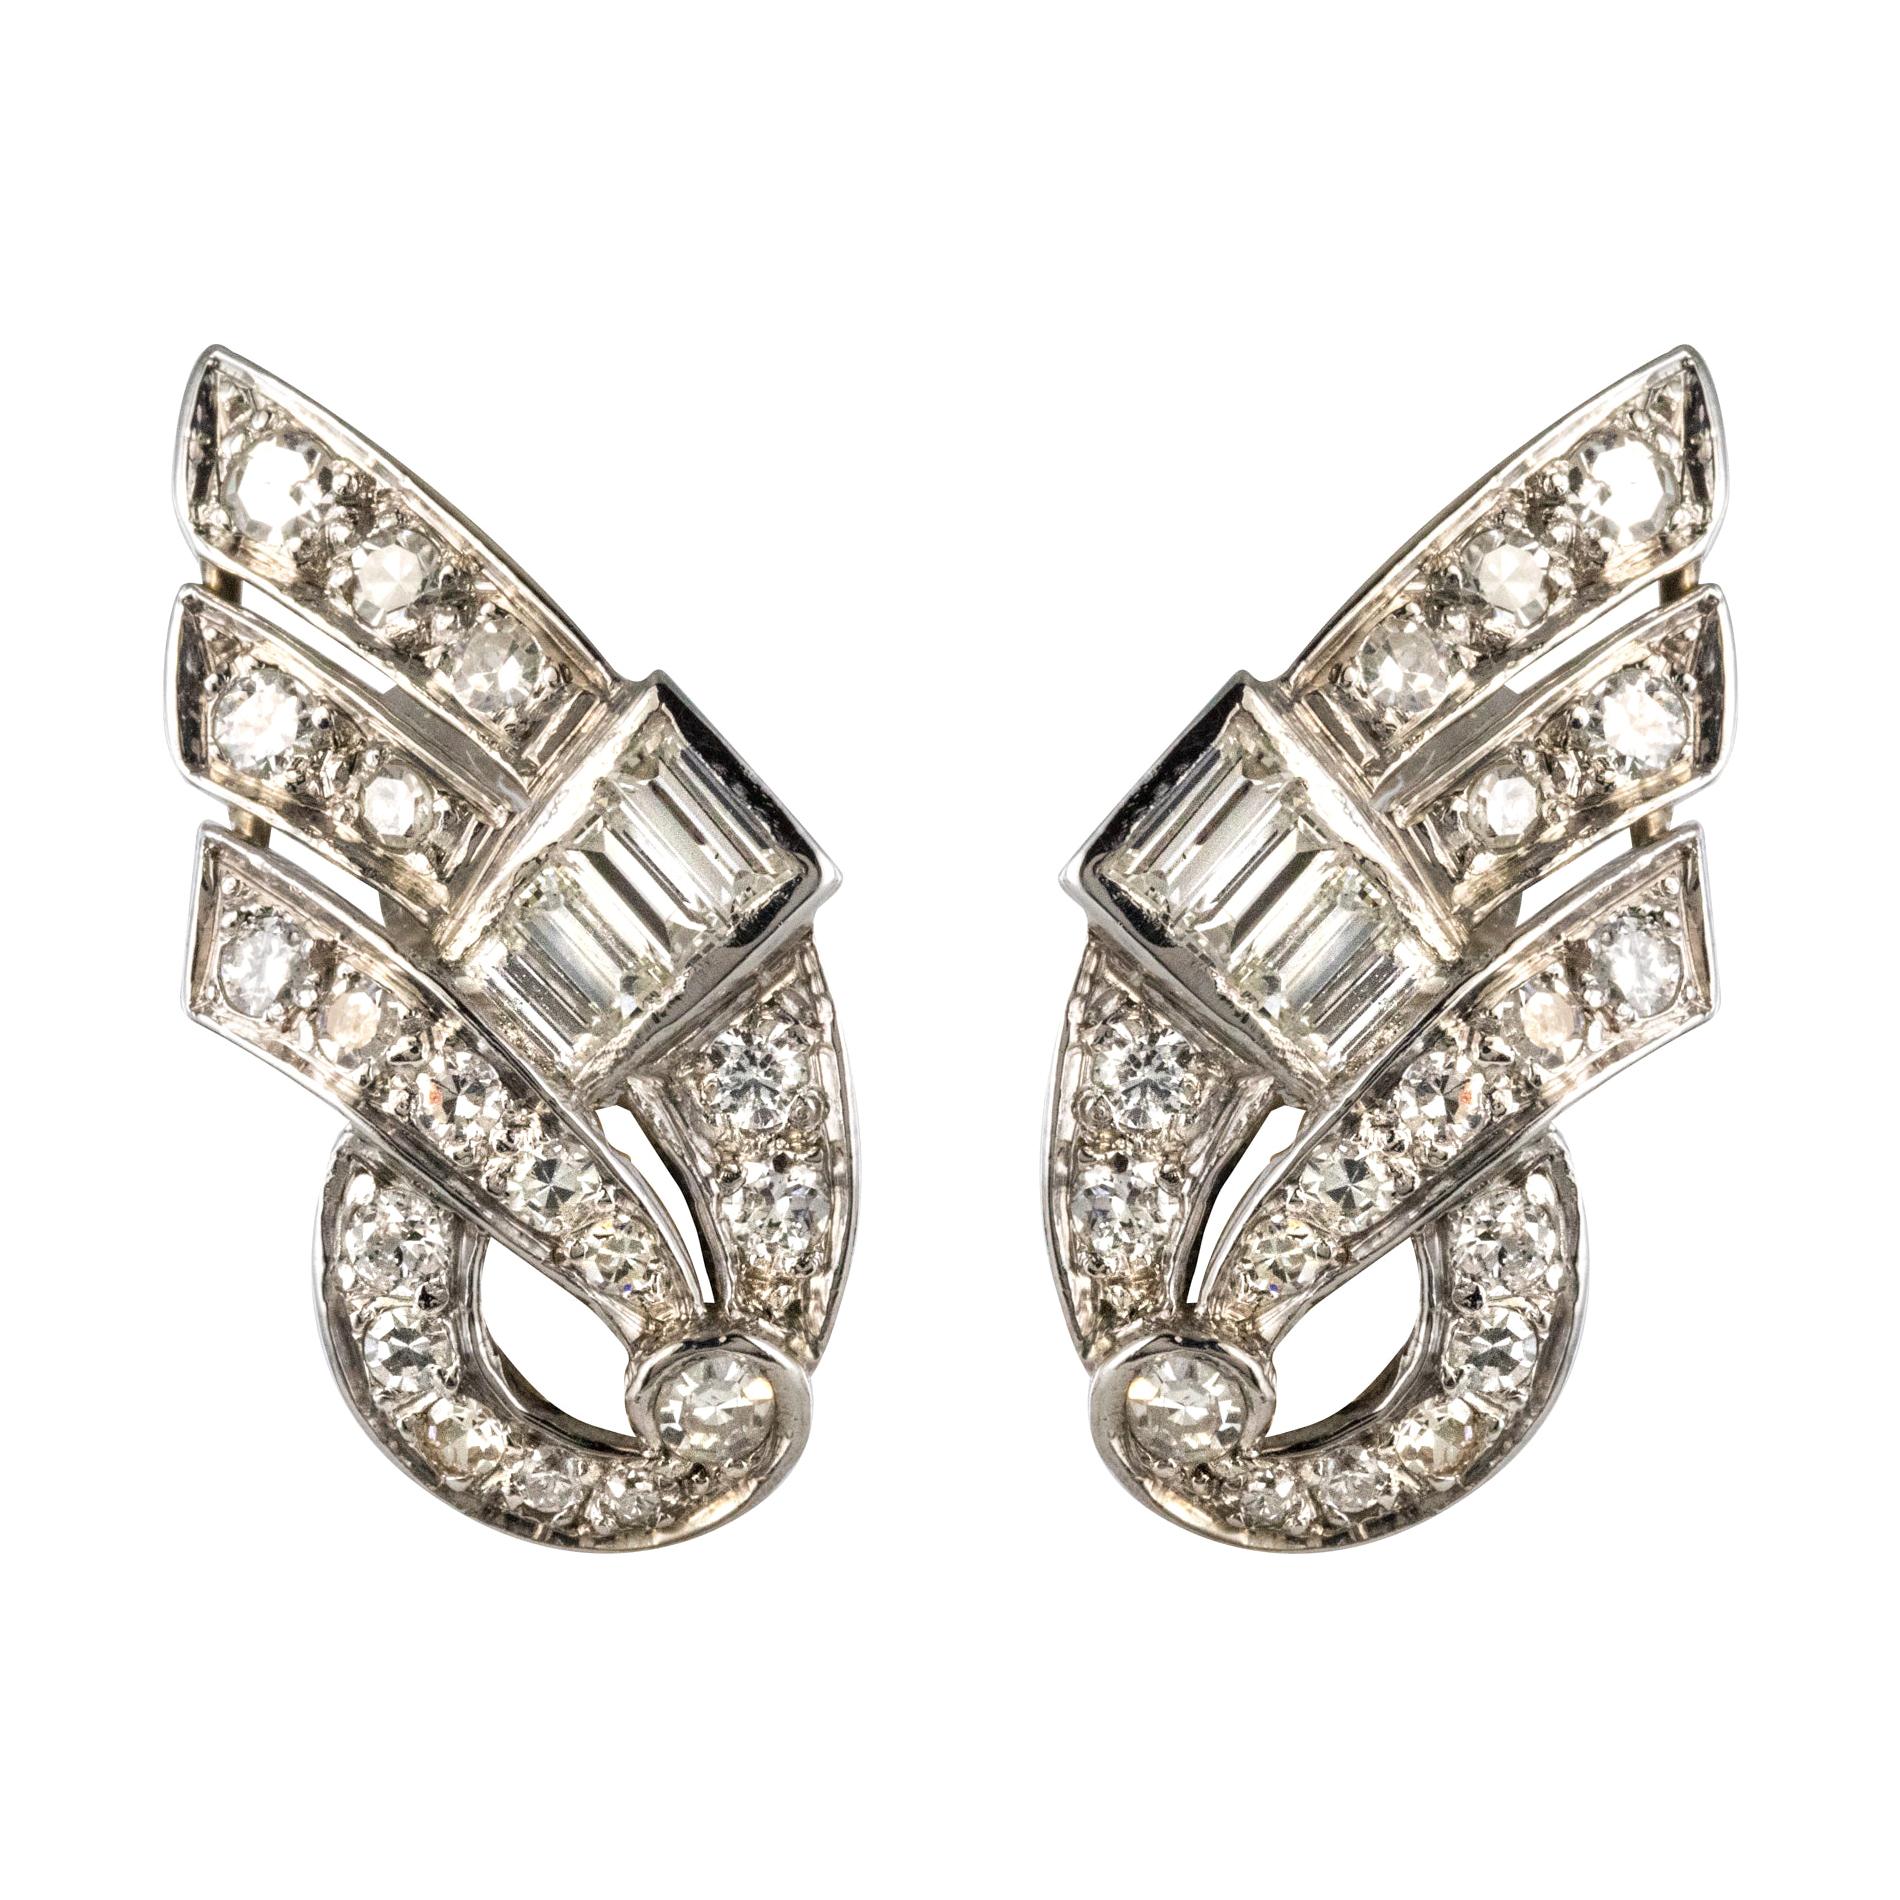 1920s Art Deco Platinum 18 Karat White Gold Diamond Earrings